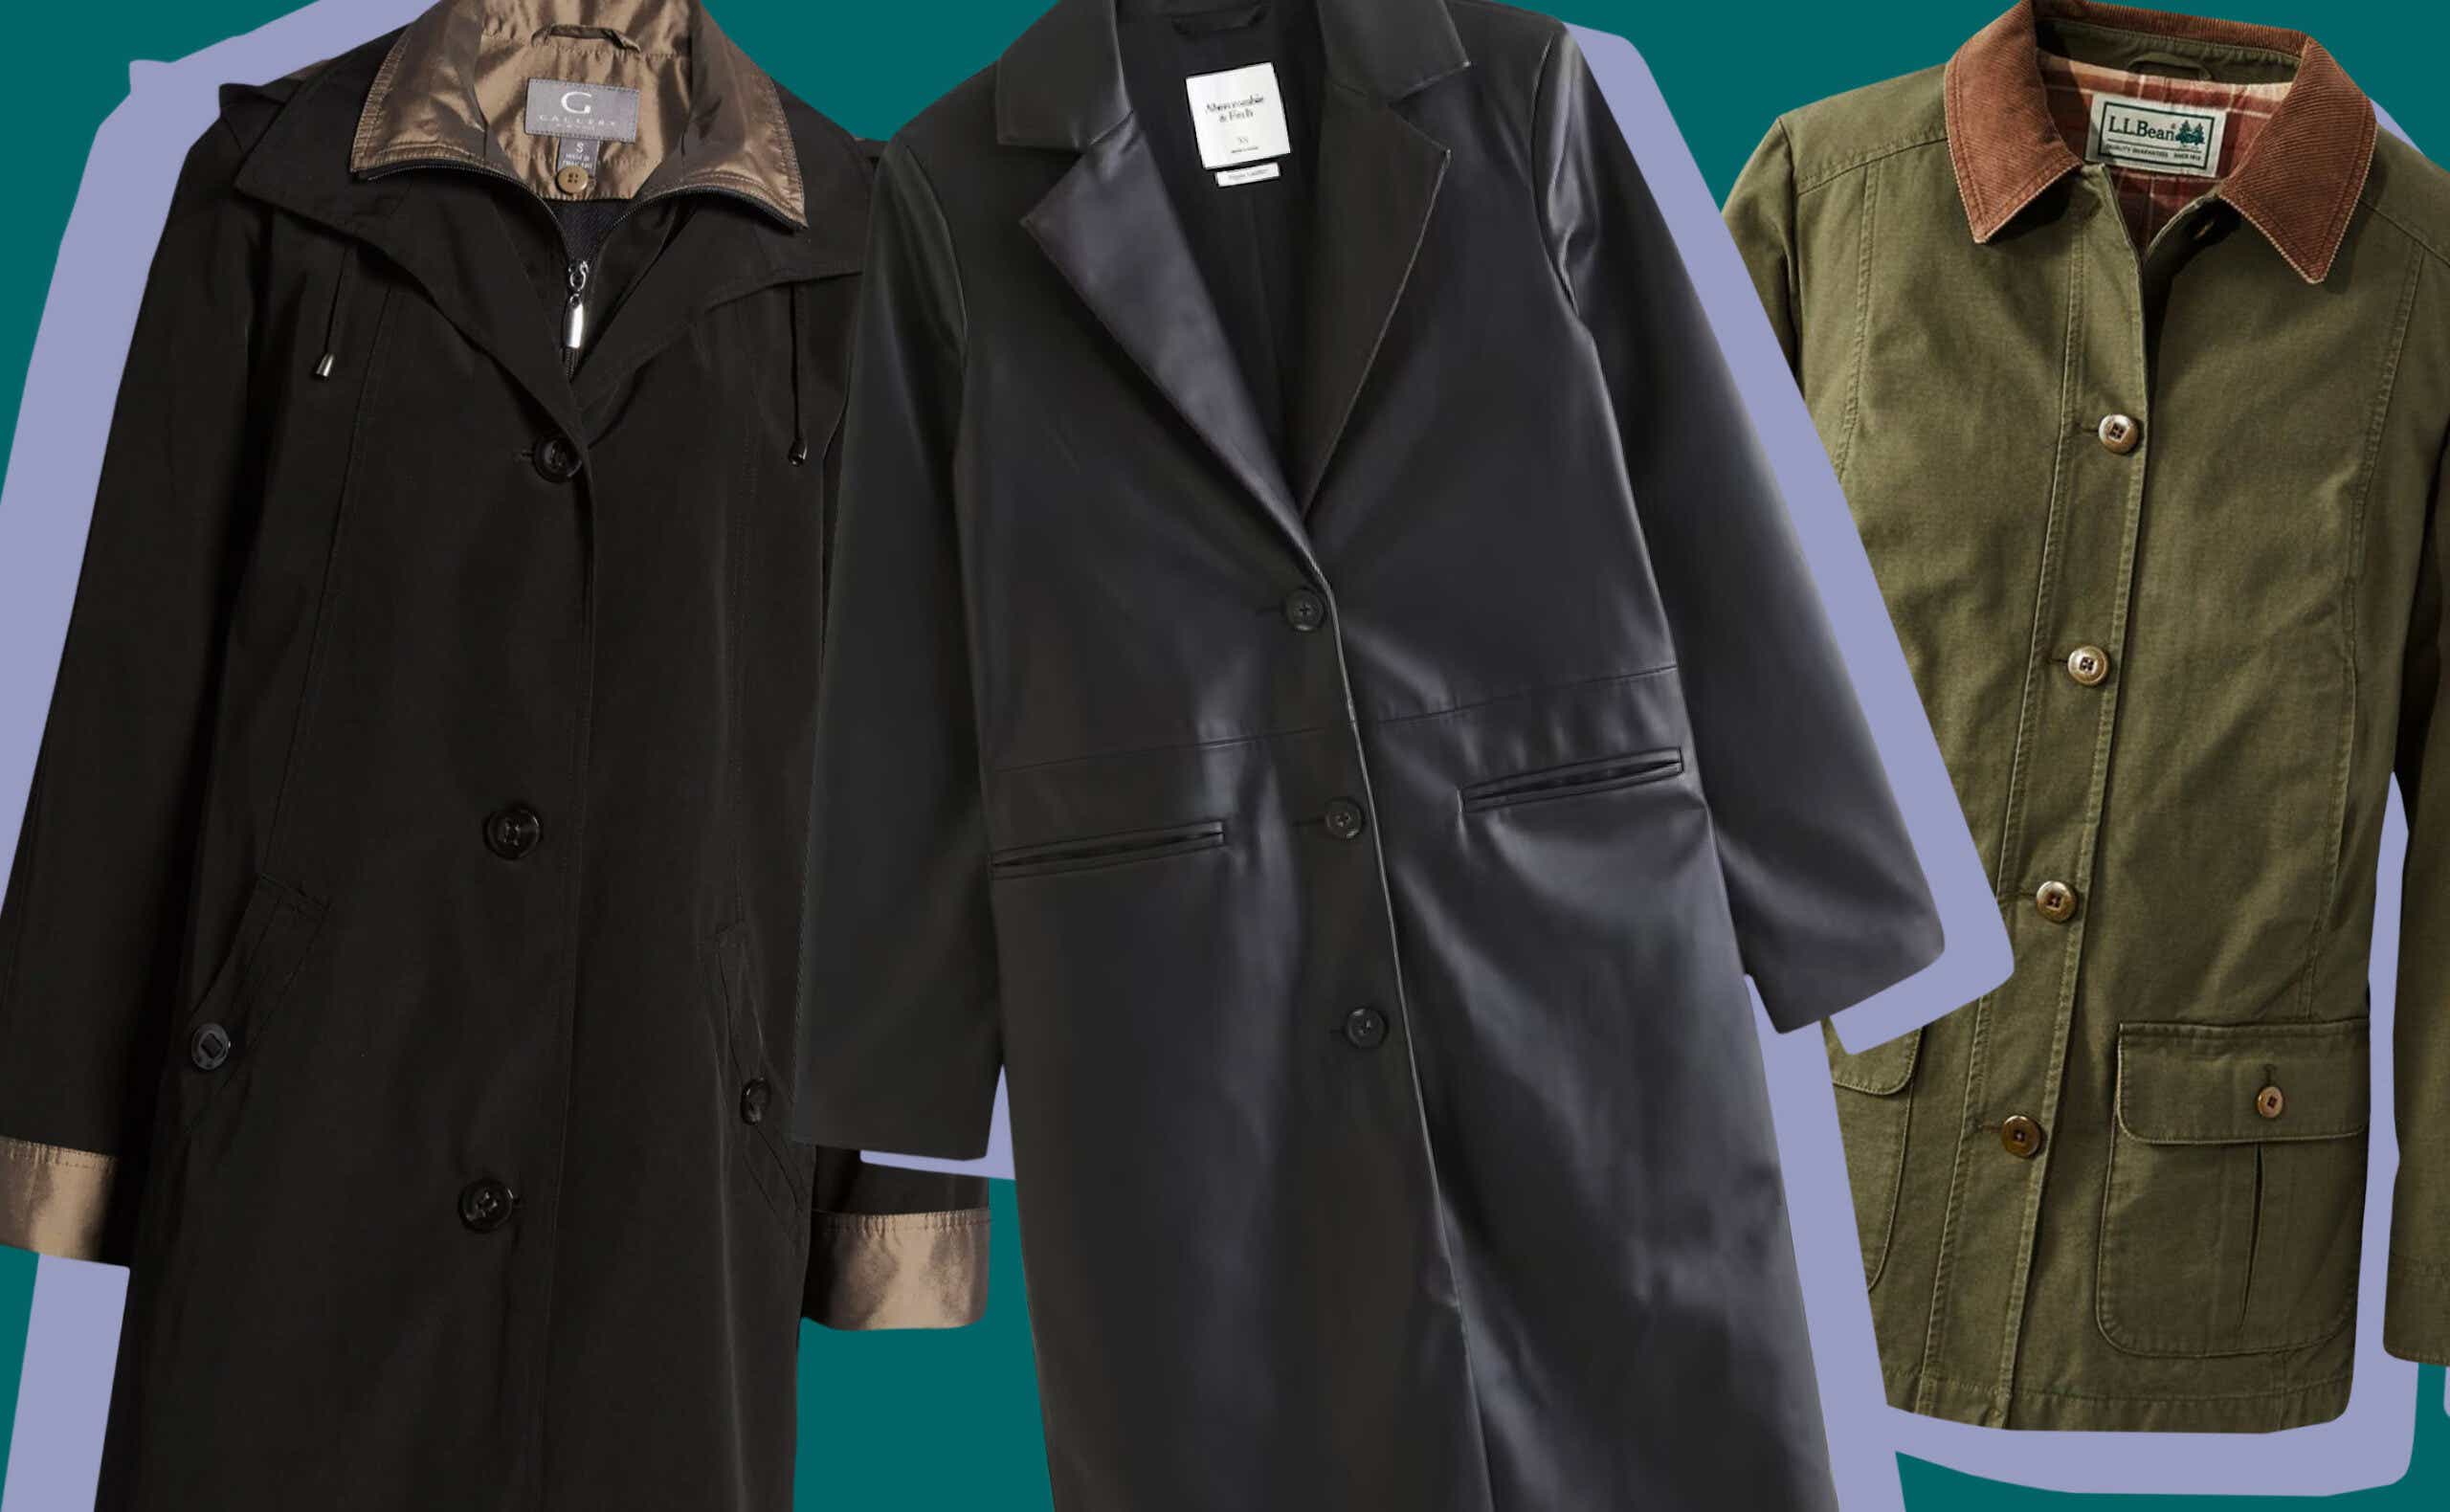 Mens Denim Jacket with Fleece Sleeves & Detachable Hood Trucker Classic  Coat New